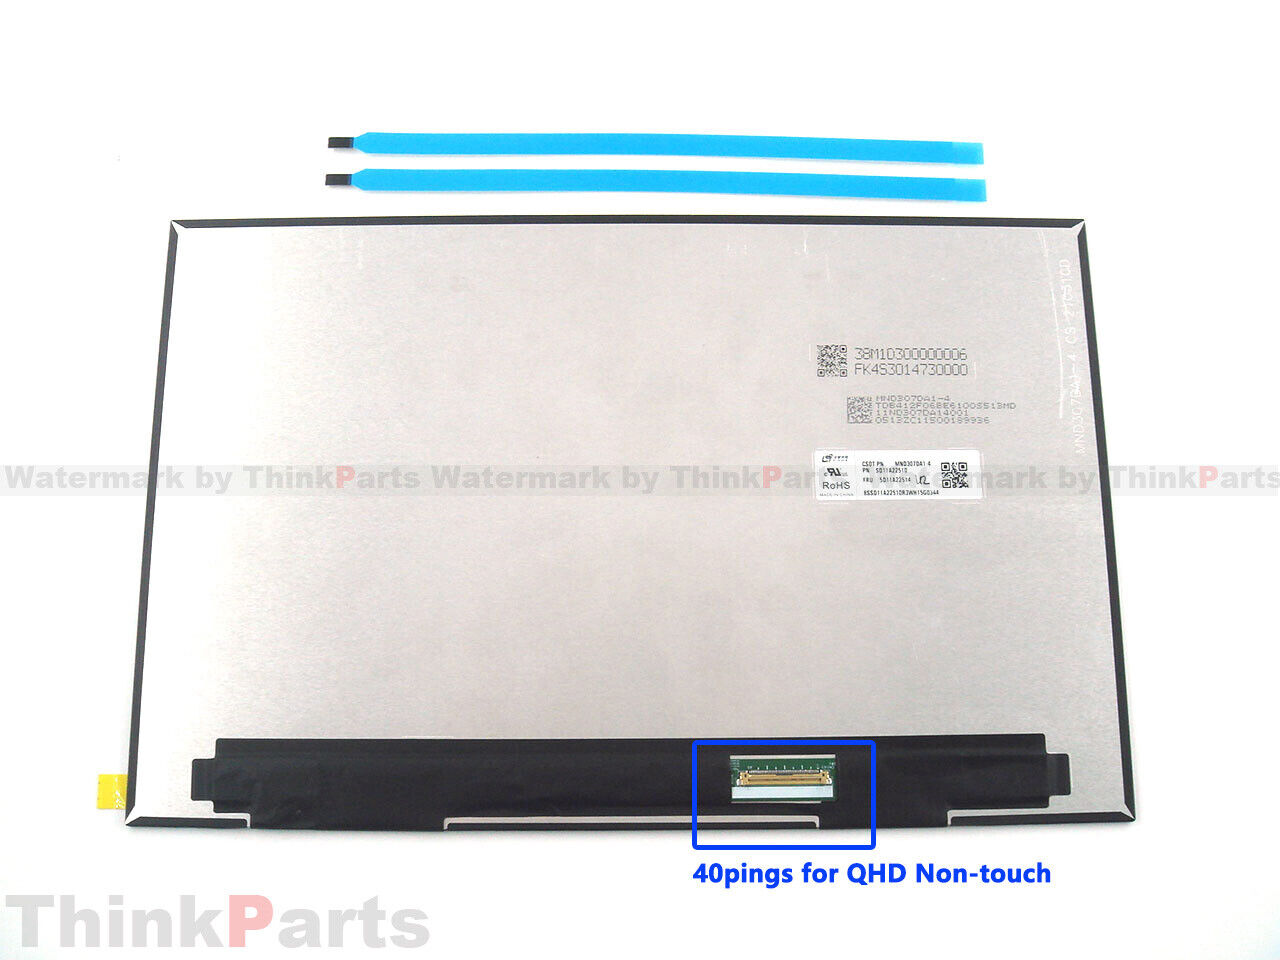 New/Orig Lenovo ThinkPad X13 Gen 2 Lcd Screen QHD 40-pings Bent NTS 5D11A22514